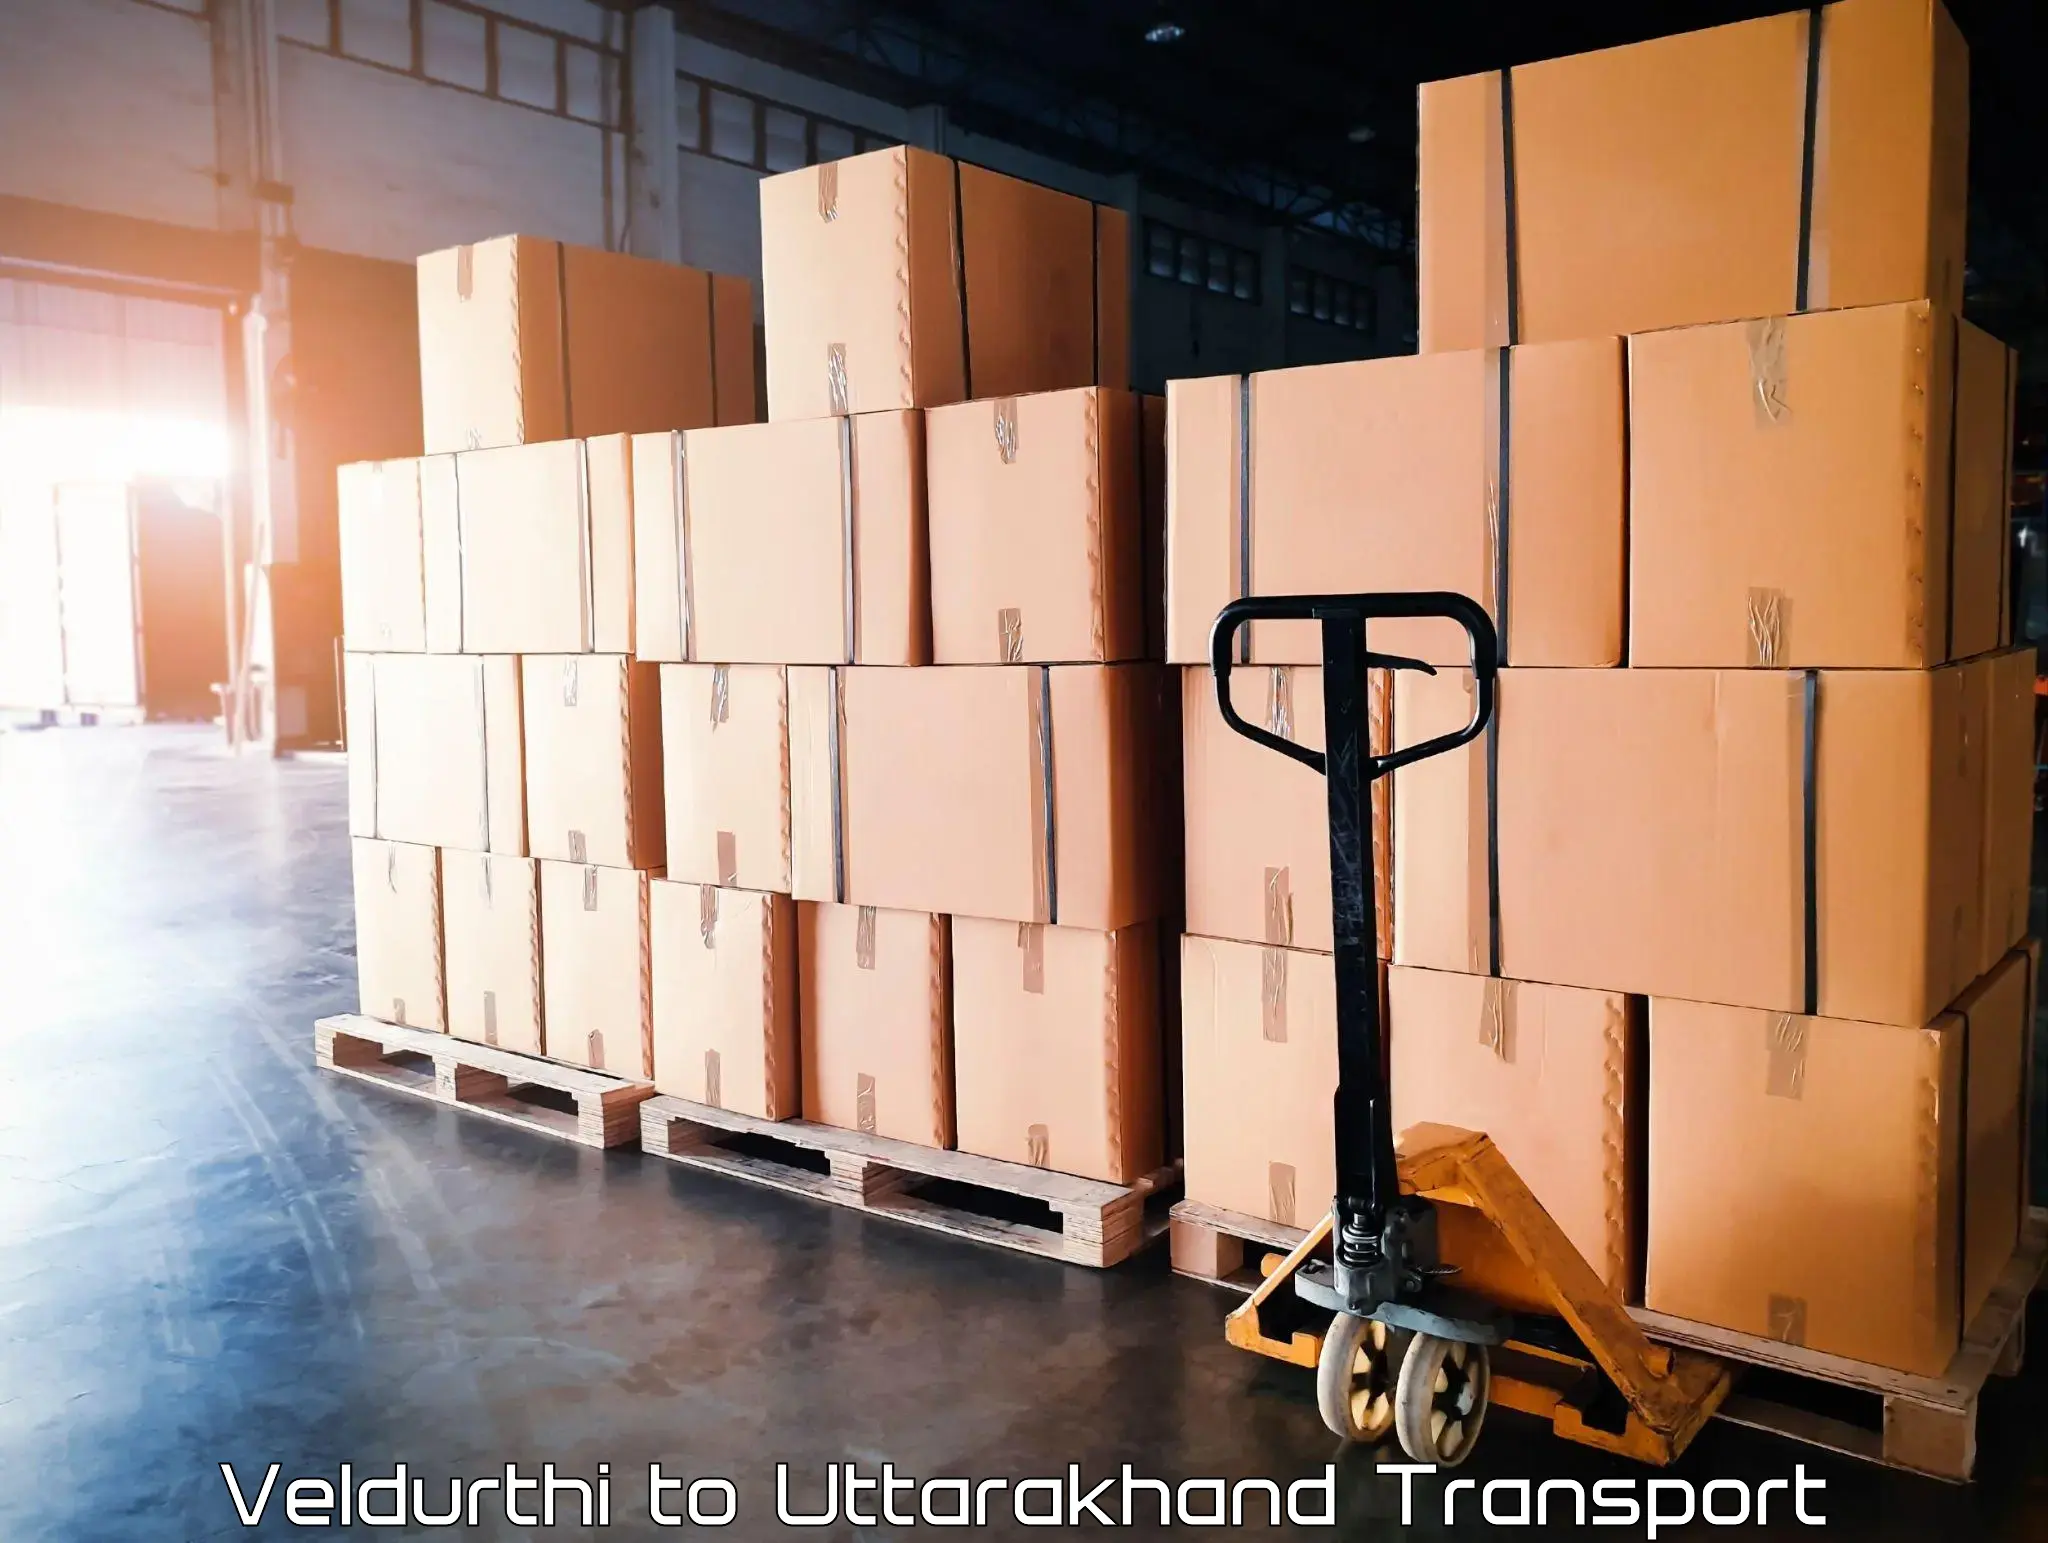 Commercial transport service Veldurthi to Uttarkashi